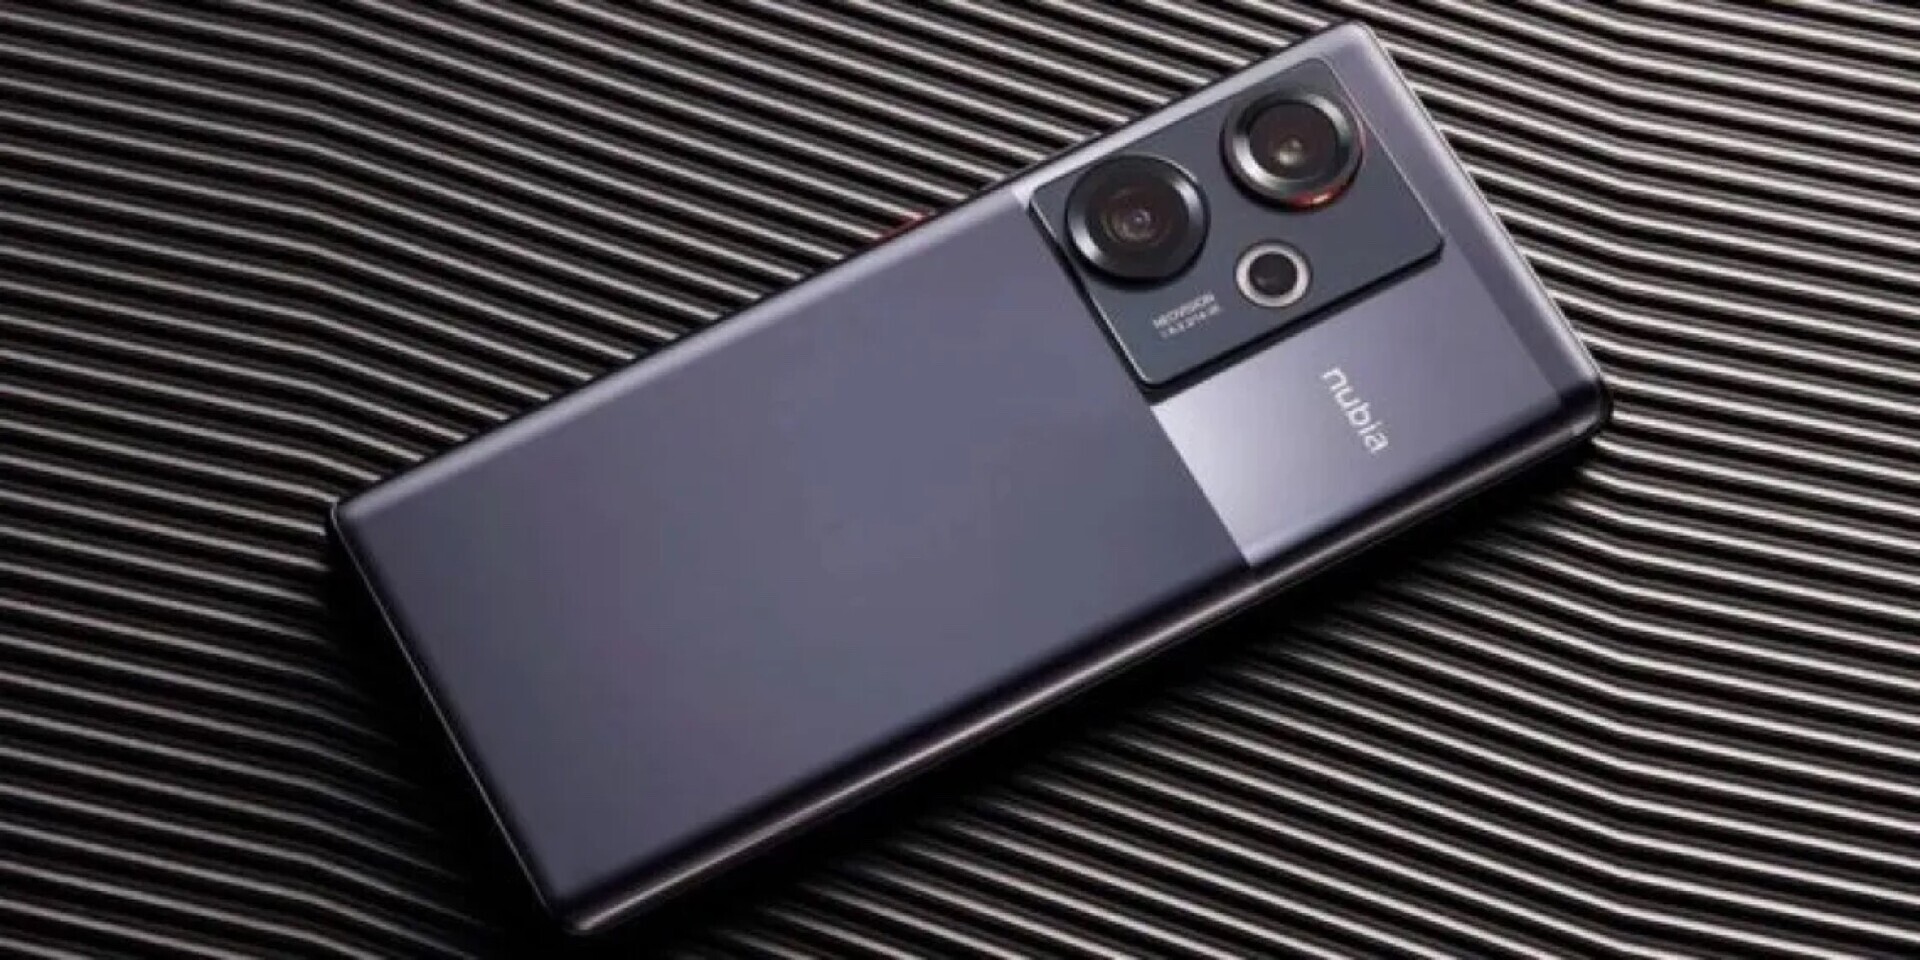 Nubia anuncia su Z50S Pro con Snapdragon 8+ Gen2 y lente de 35mm, Dispositivos